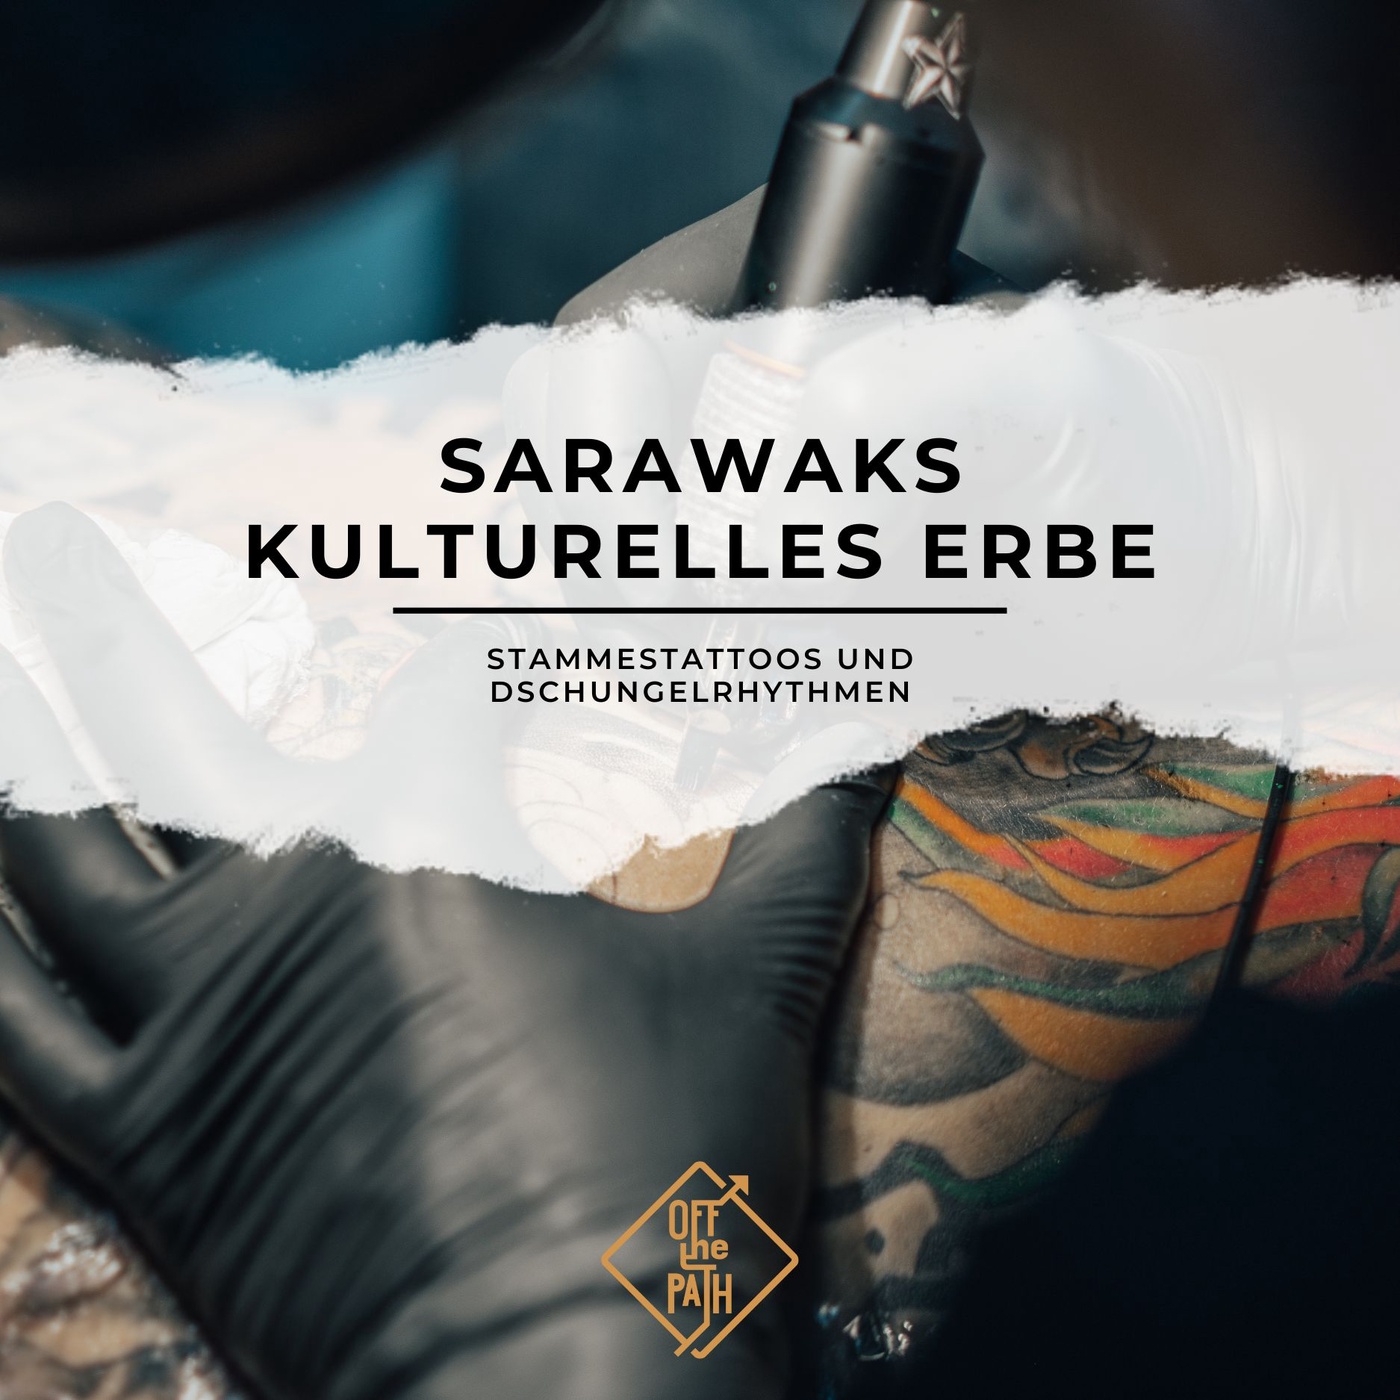 Stammestattoos und Dschungelrhythmen: Sarawaks kulturelles Erbe